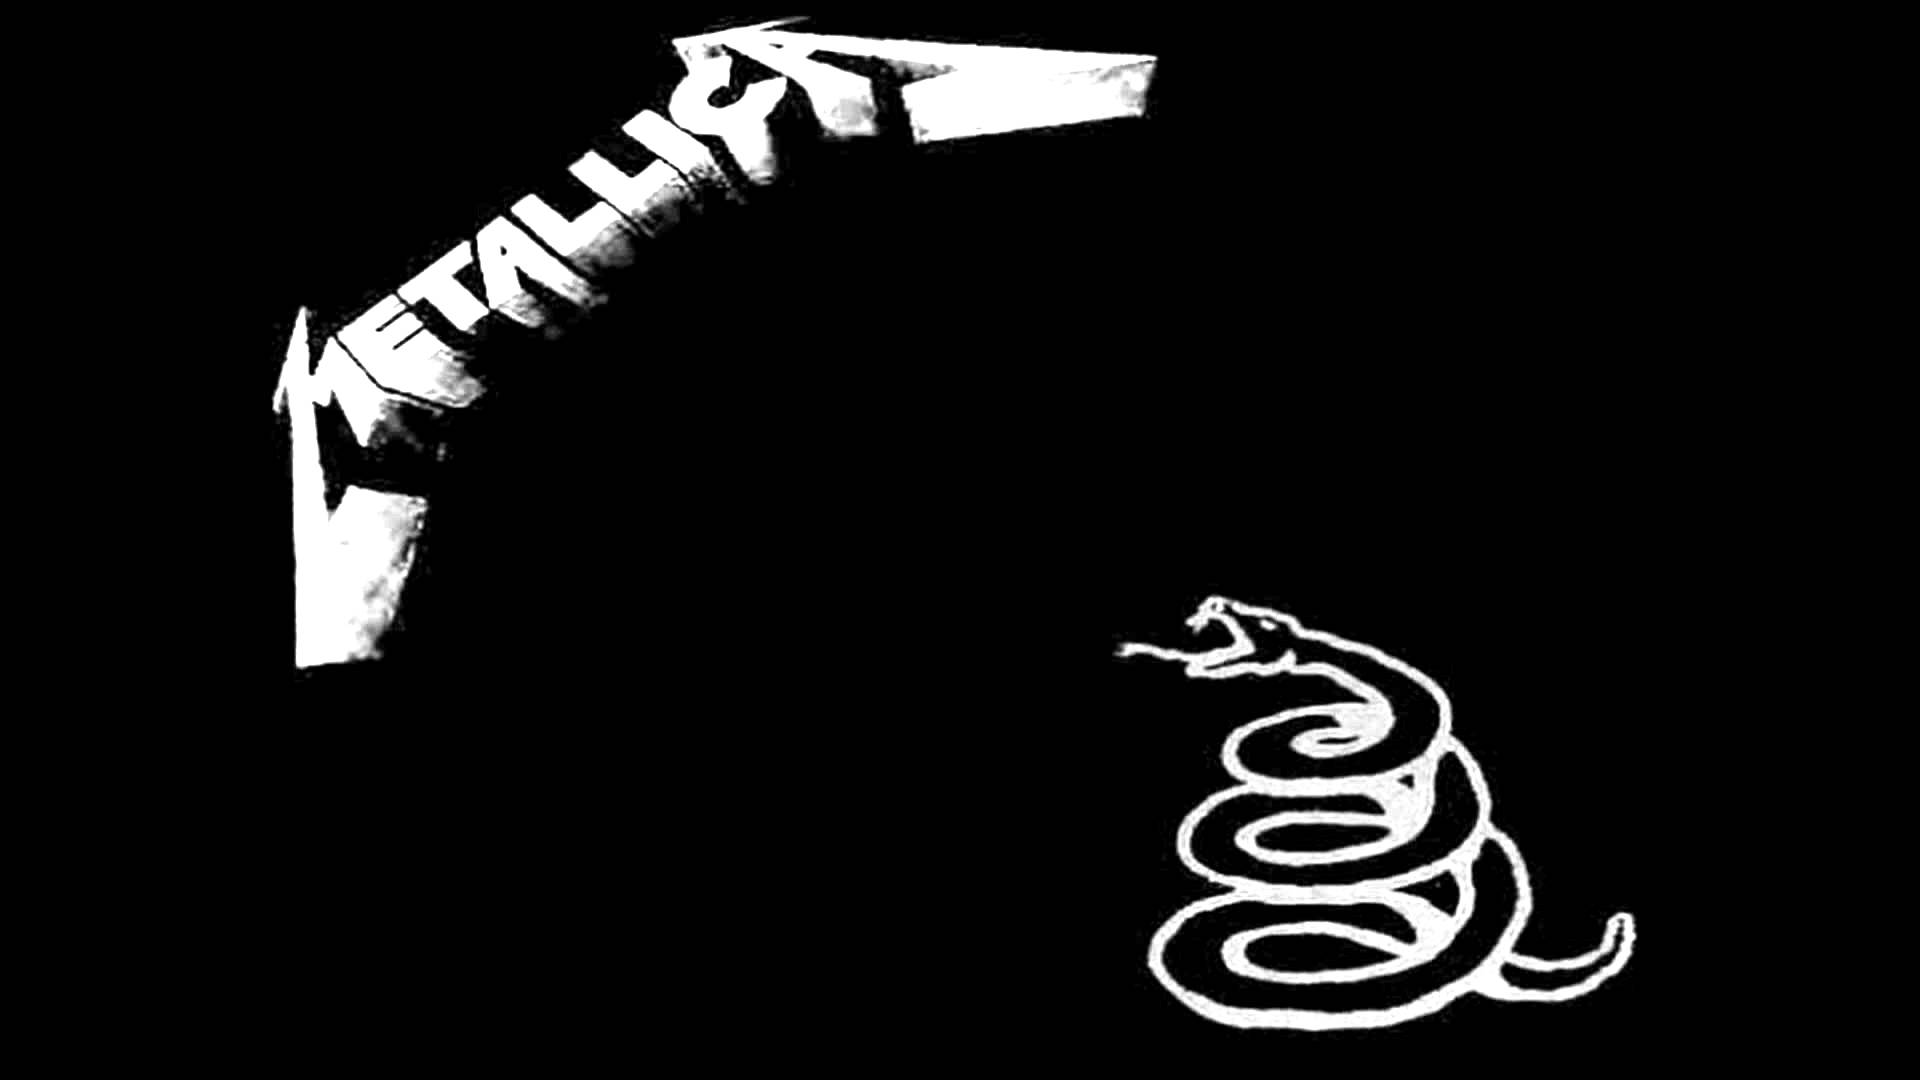 Metallica Black Album Displaying Image For